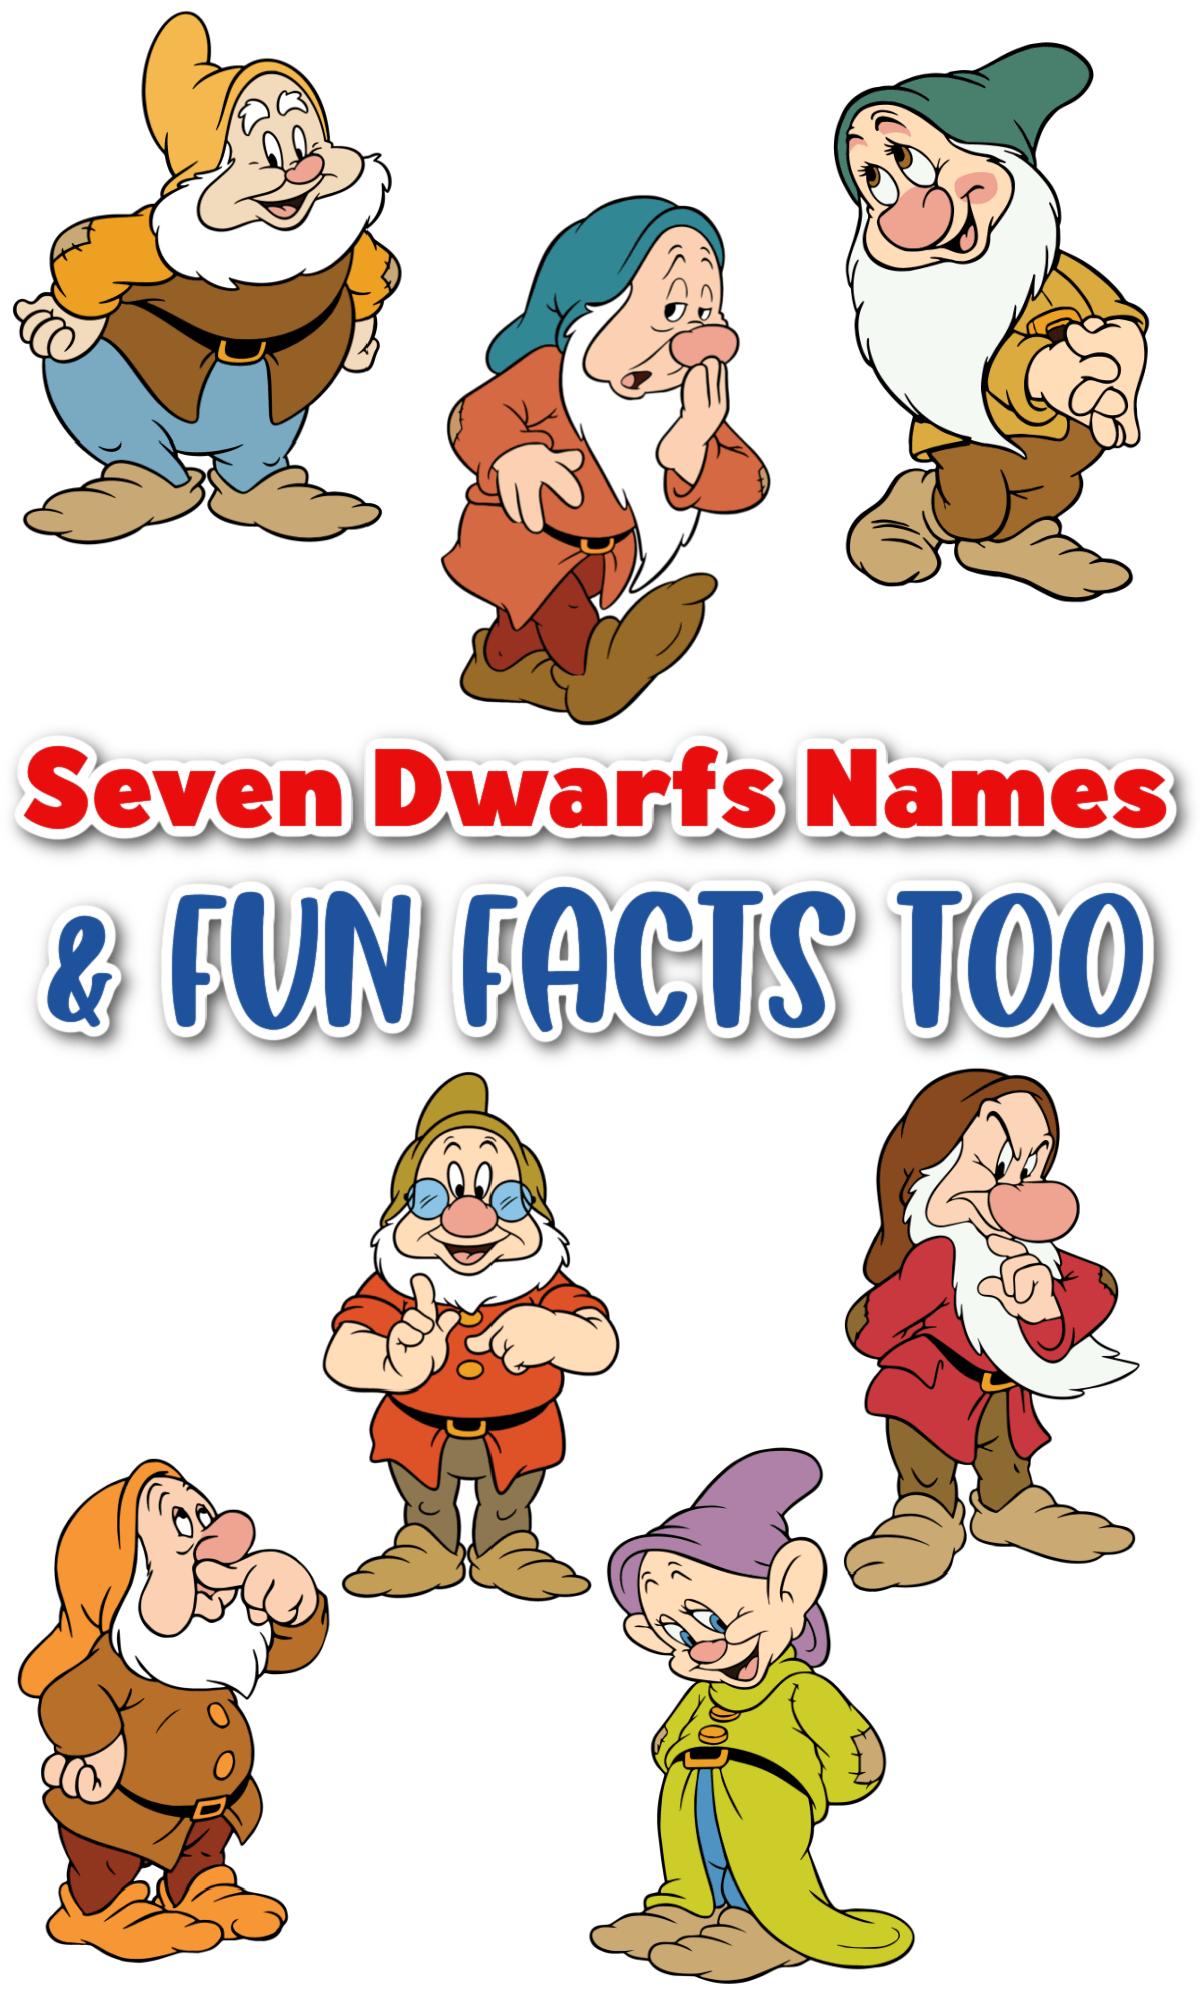 Seven dwarfs